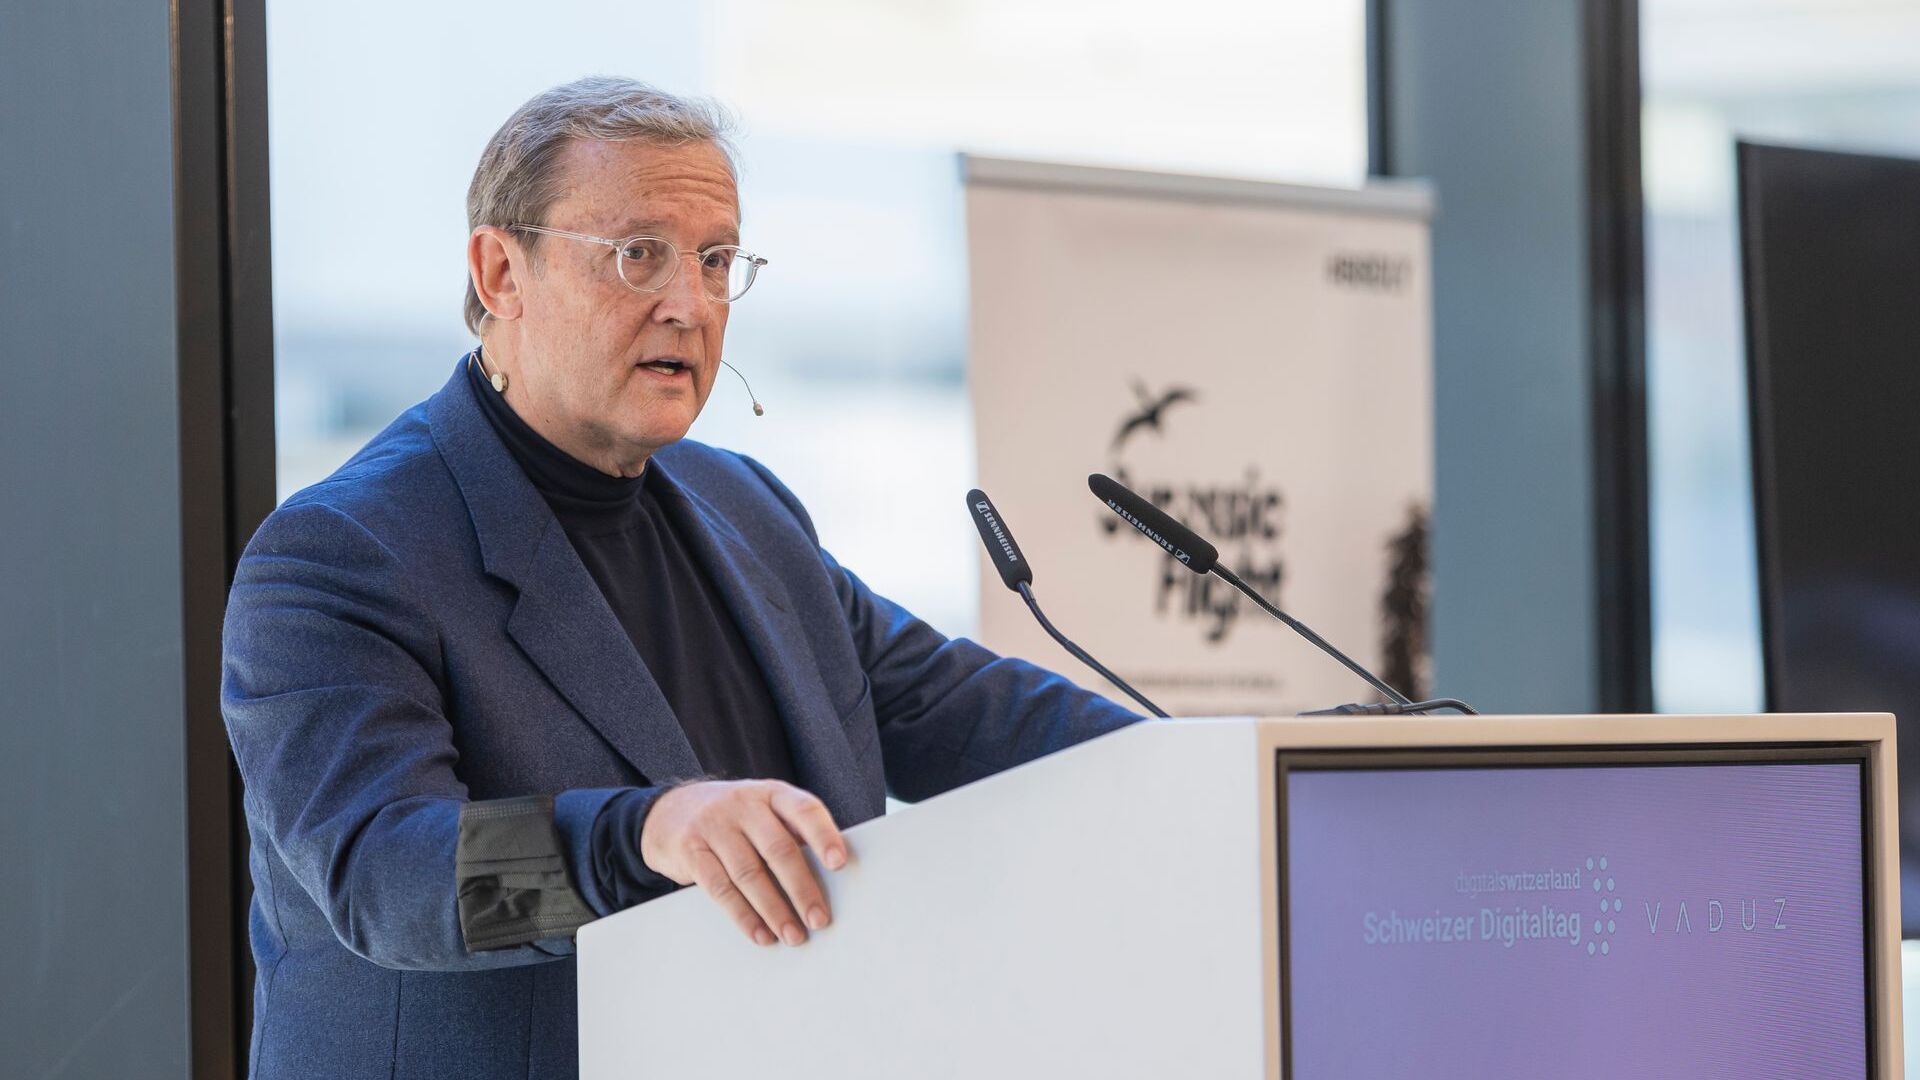 Liechtensteinin ruhtinaskunnan pääkaupungin taidemuseo toivotti "Digitaltag Vaduzin" tervetulleeksi lauantaina 6. marraskuuta 2021: Kaiser Partnerin puheenjohtajan ja omistajan Fritz Kaiserin puhe.